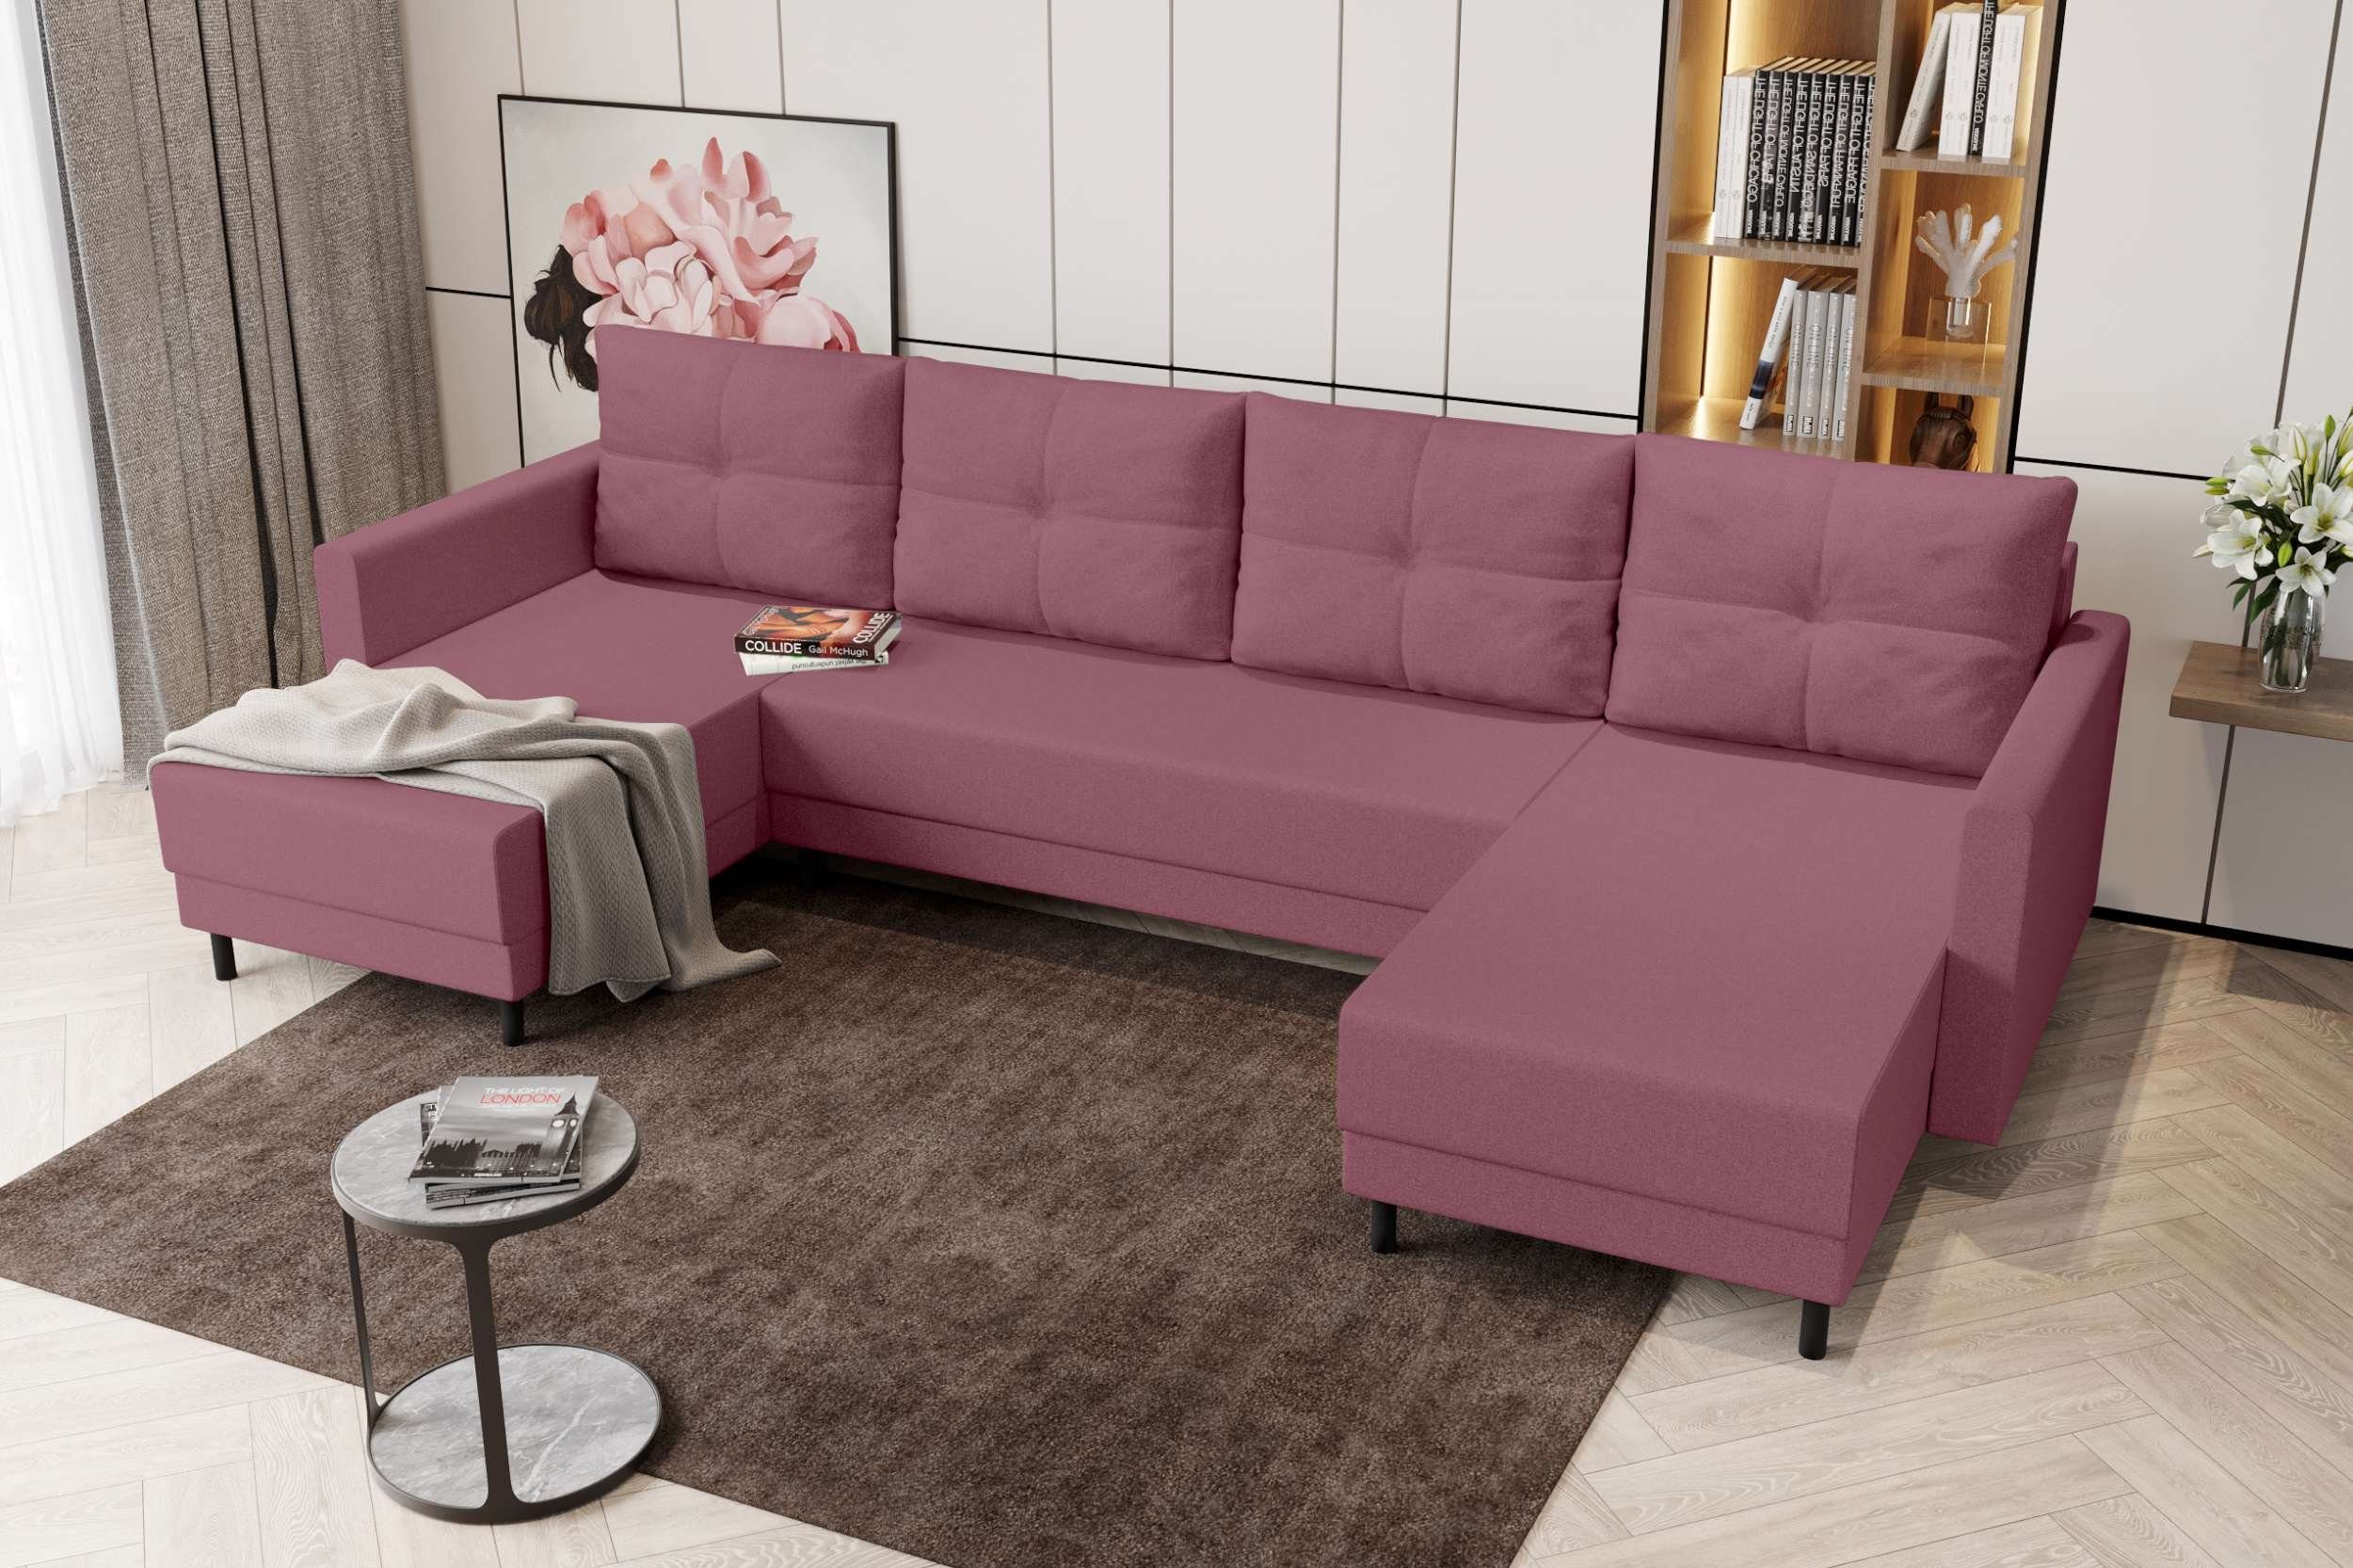 Stylefy Wohnlandschaft Selena, U-Form, Eckcouch, Design Sitzkomfort, Sofa, mit Modern Bettkasten, Bettfunktion, mit